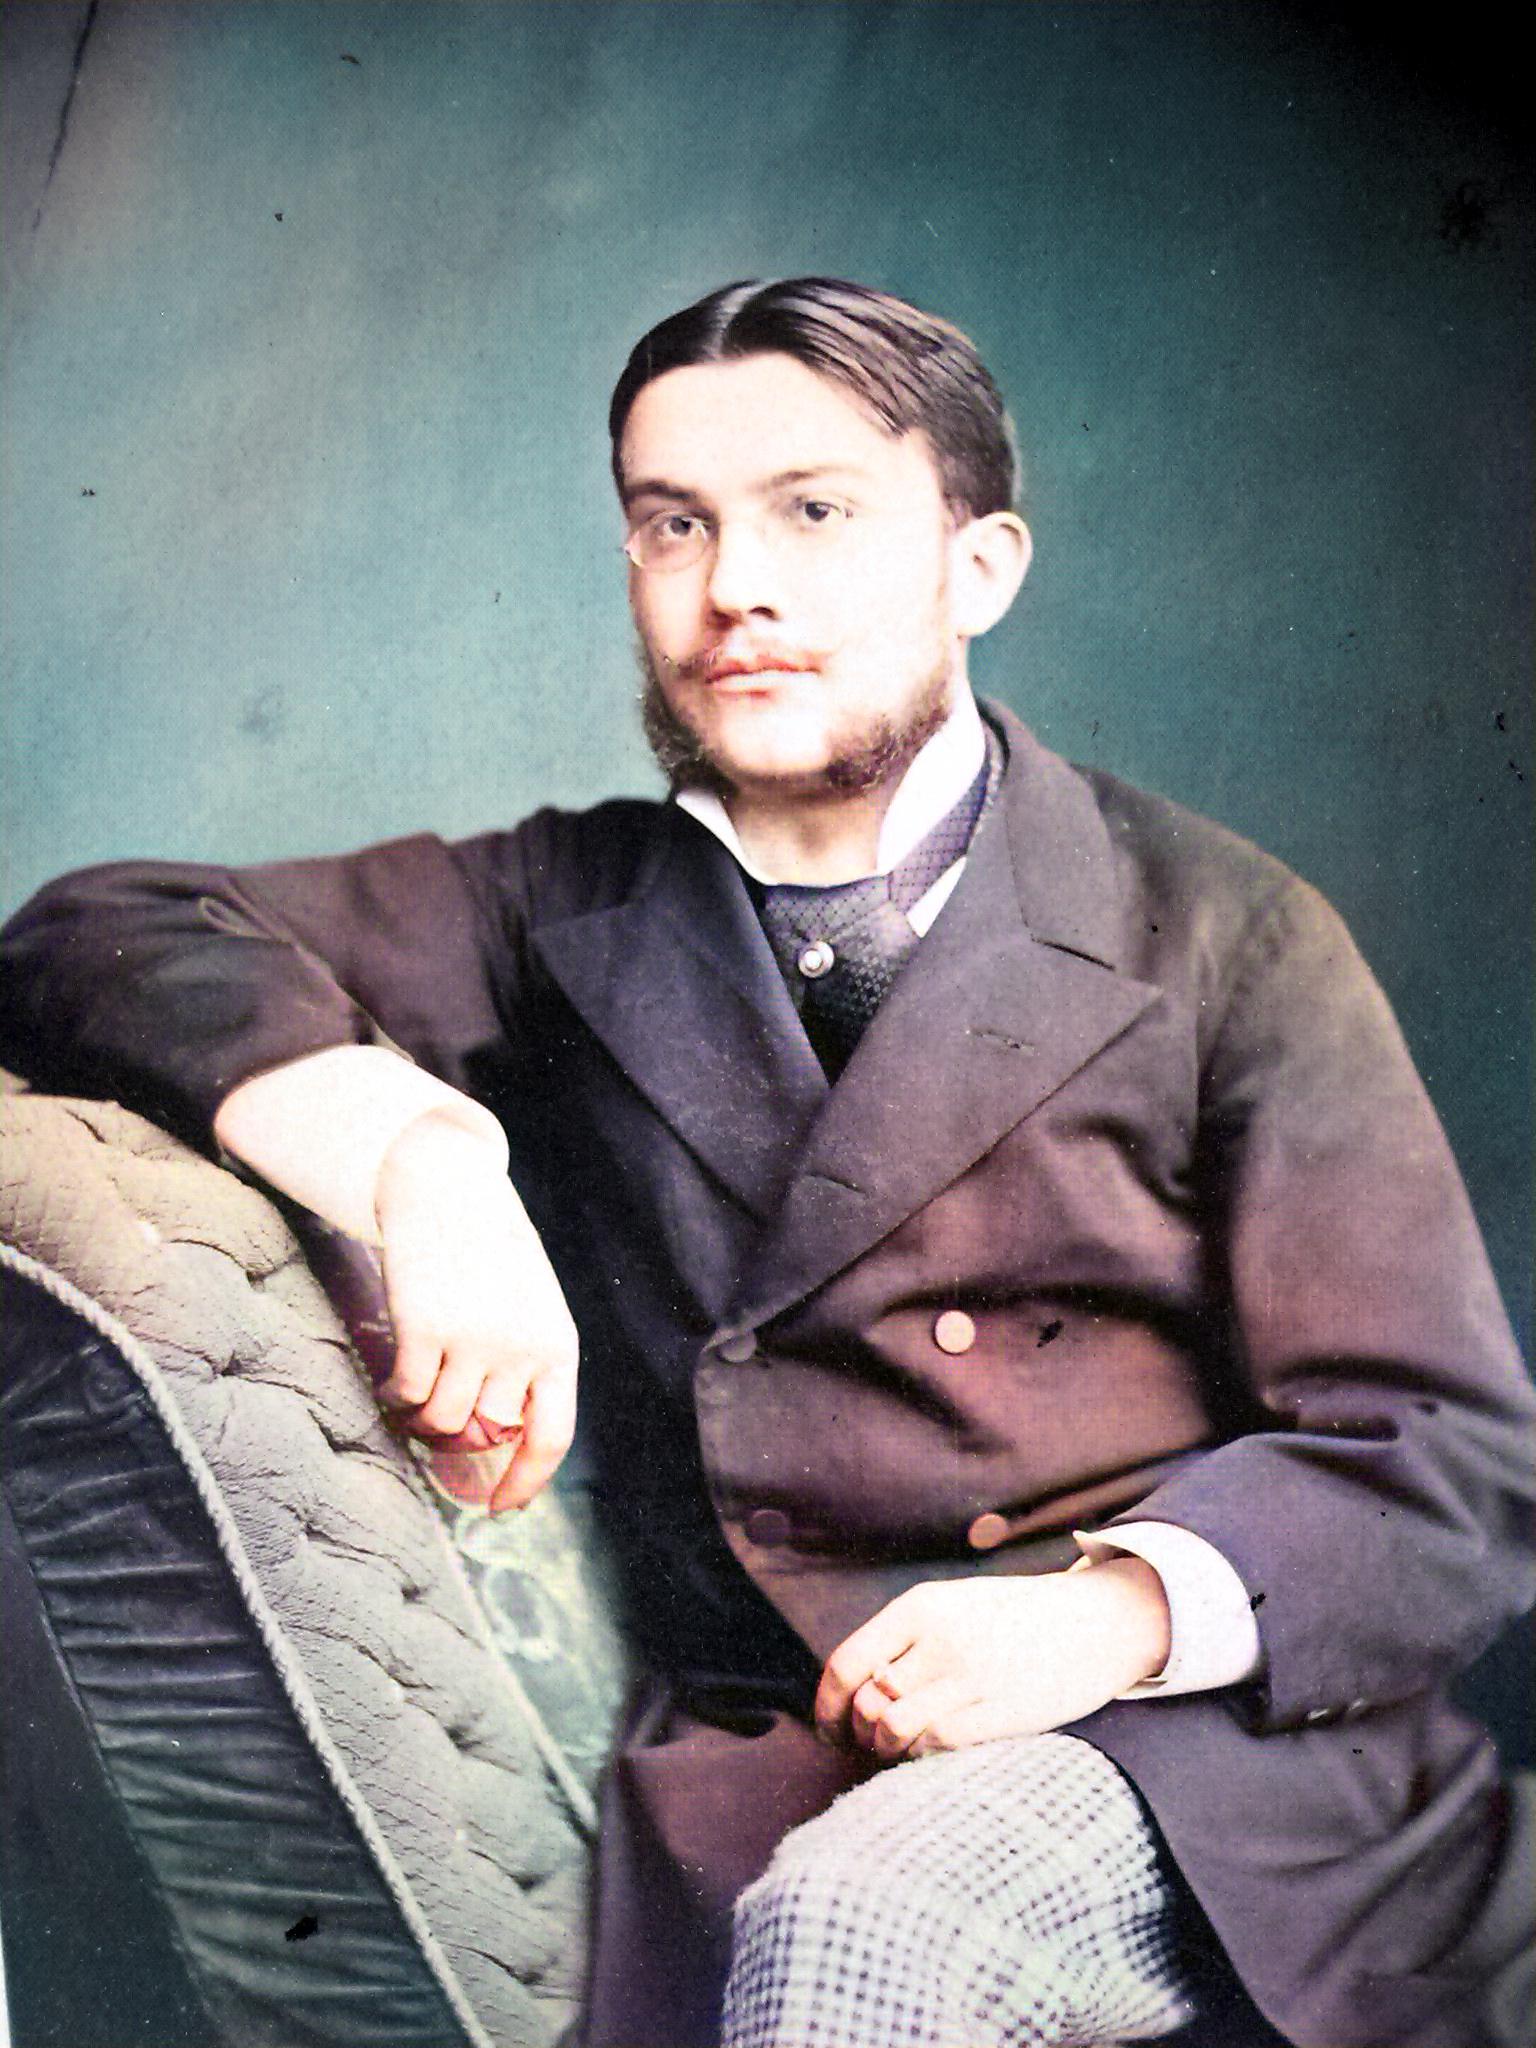 Gothard Jenő (1857-1909) az 1880-as évek elején